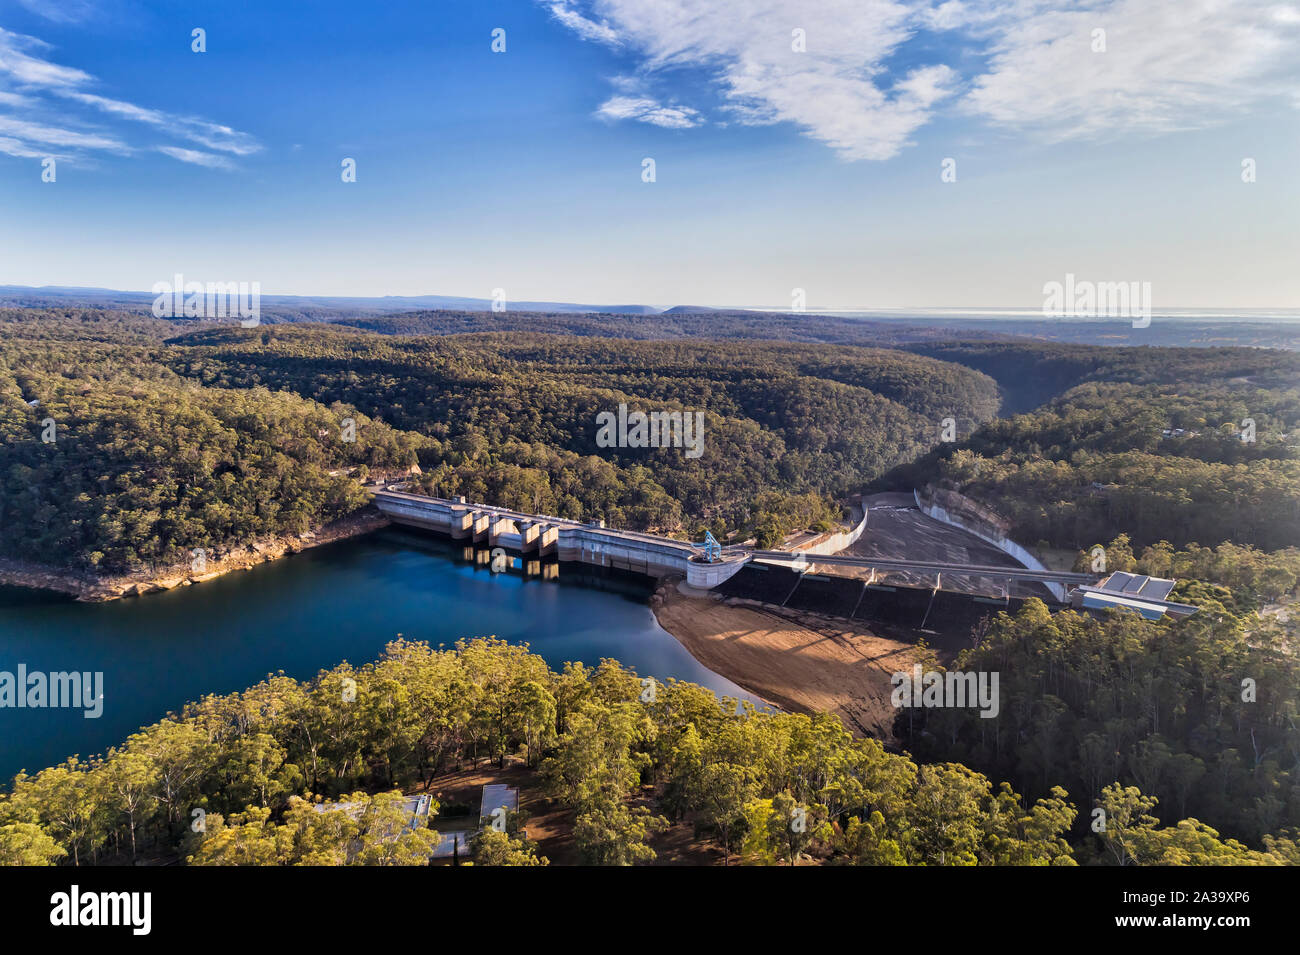 Warragamba Staudamm von Sydney Wasserversorgung Infrastruktur auf Nepean River bildet Süßwassersee zwischen Gummi-tree Wälder. Luftaufnahme über Staumauer, bridg Stockfoto